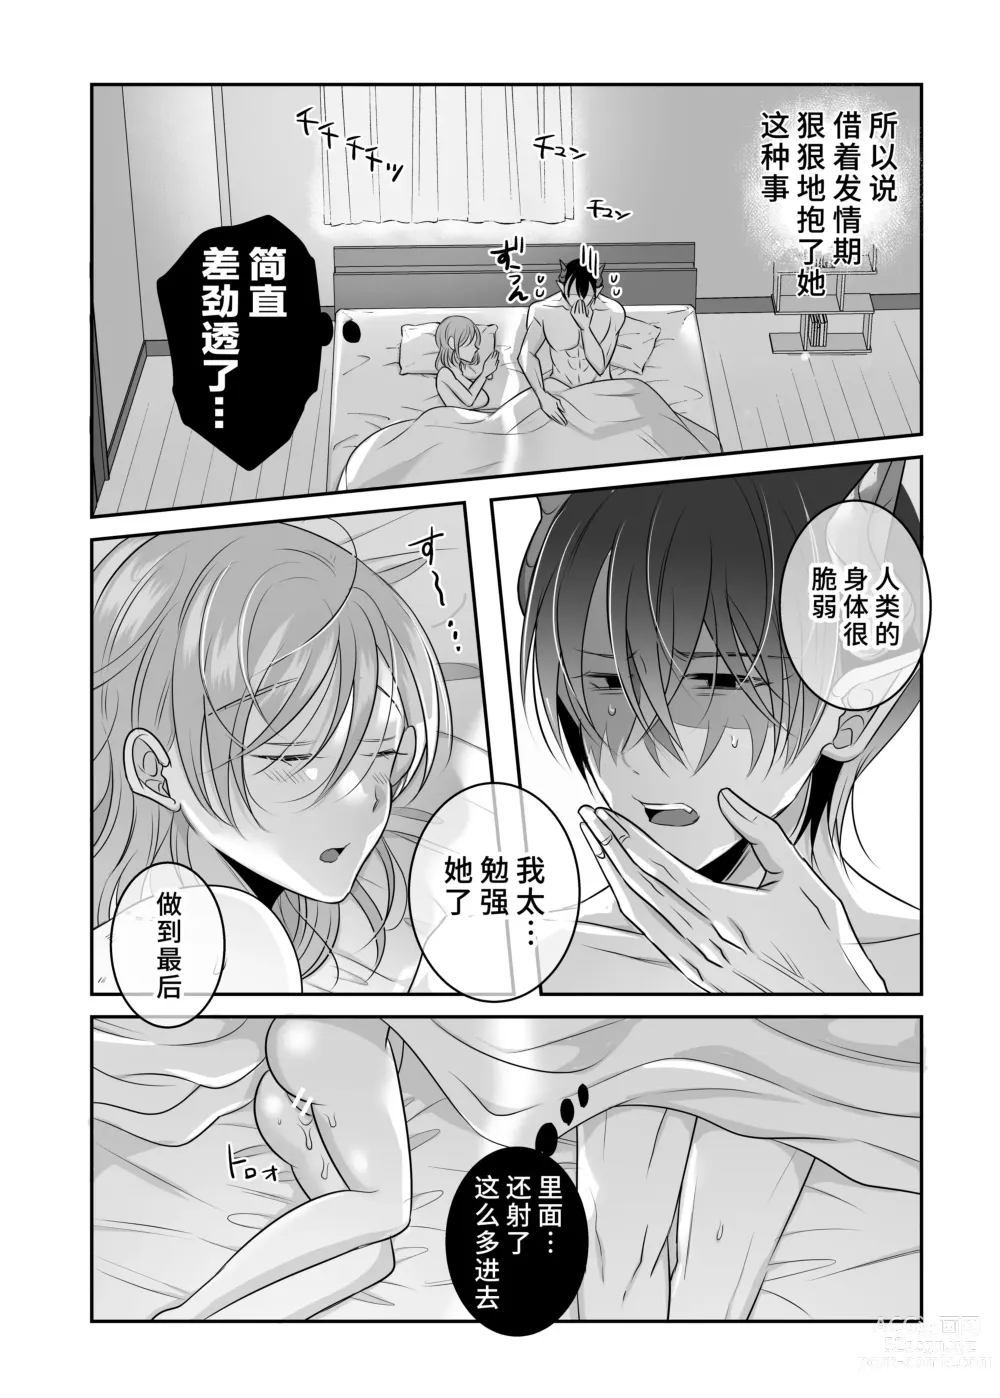 Page 49 of doujinshi 关于我的龙人同事发情期太过骇人这件事